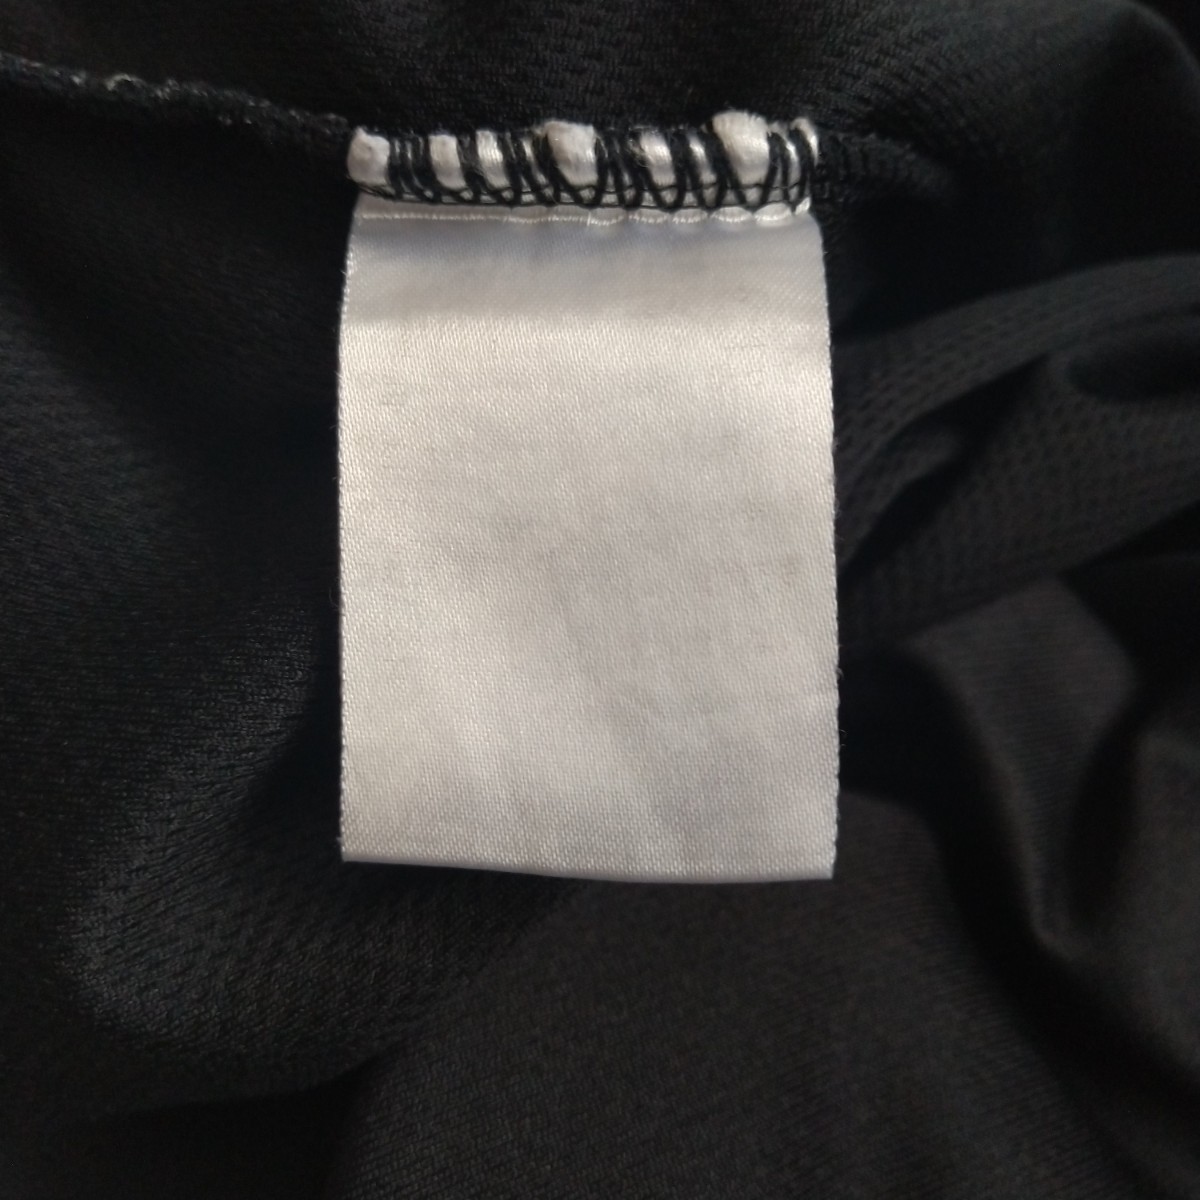 送料無料 asics アシックス BASKEMAN バスケマン プリント 半袖Tシャツ M バスケットボール BASKE MAN_洗濯で印字は消えてます。